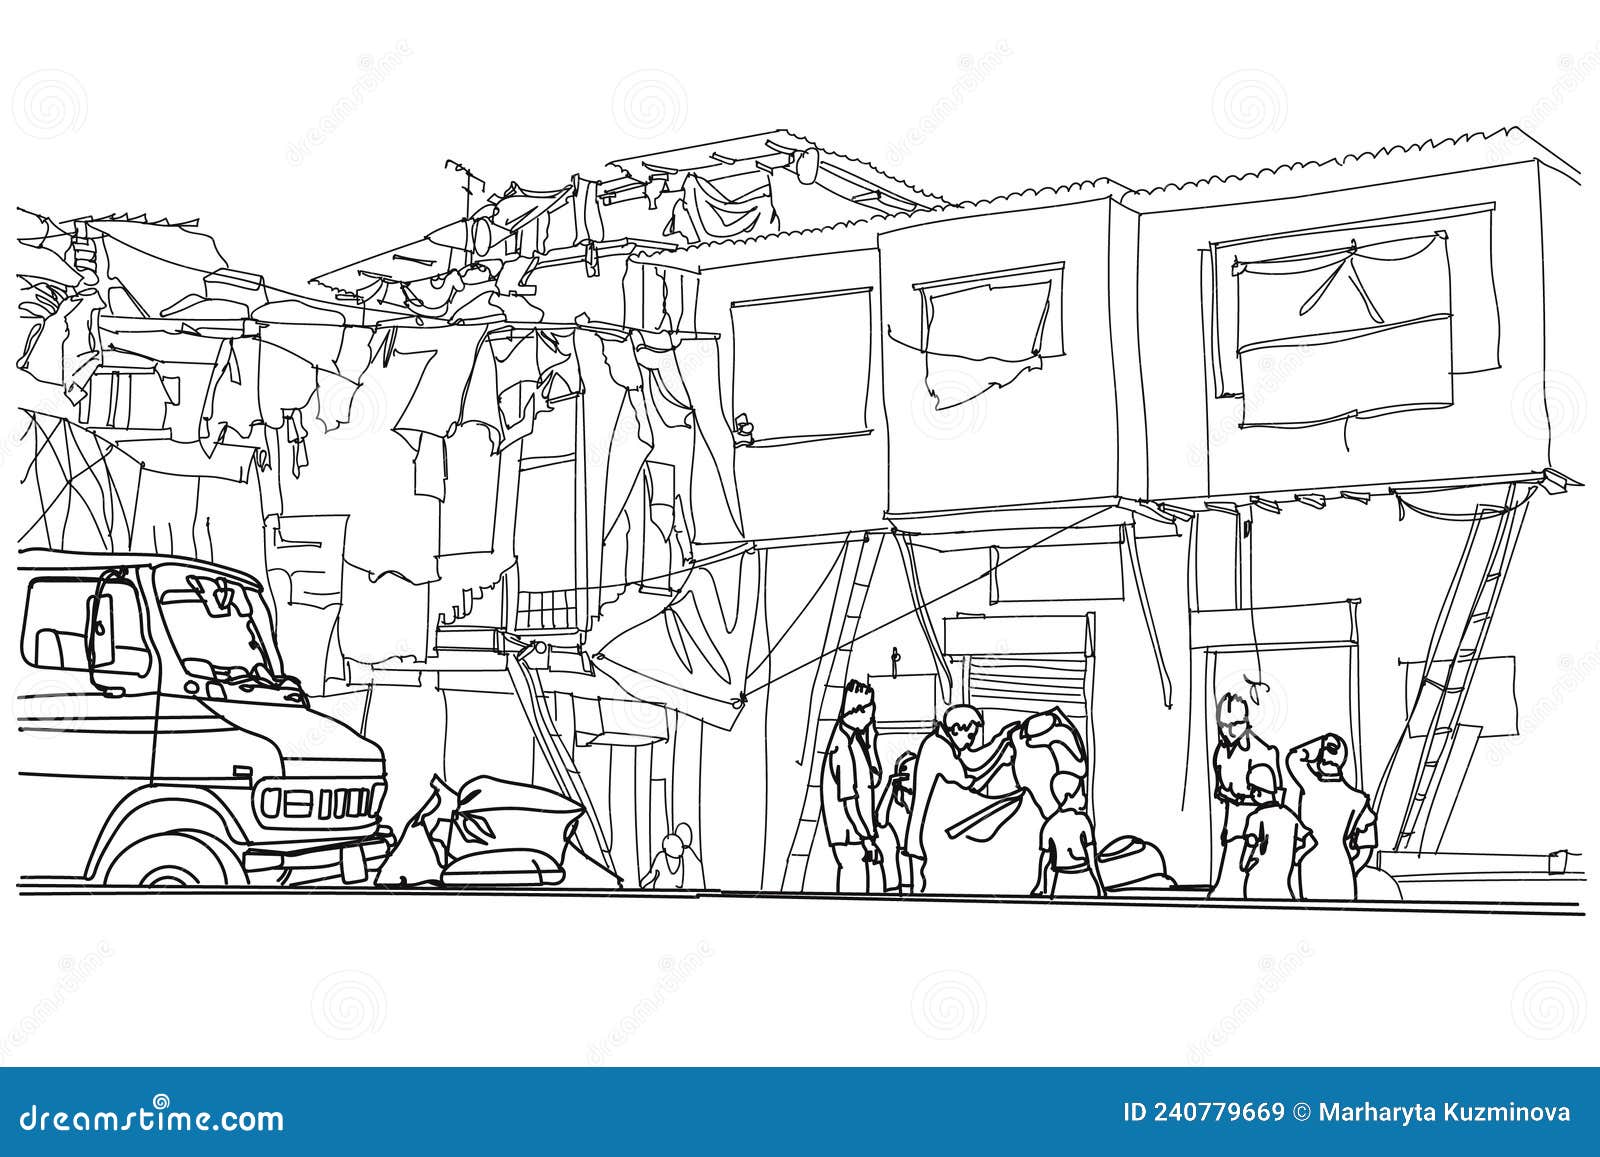 Mumbai Slums, India Cartoon Vector | CartoonDealer.com #240779669